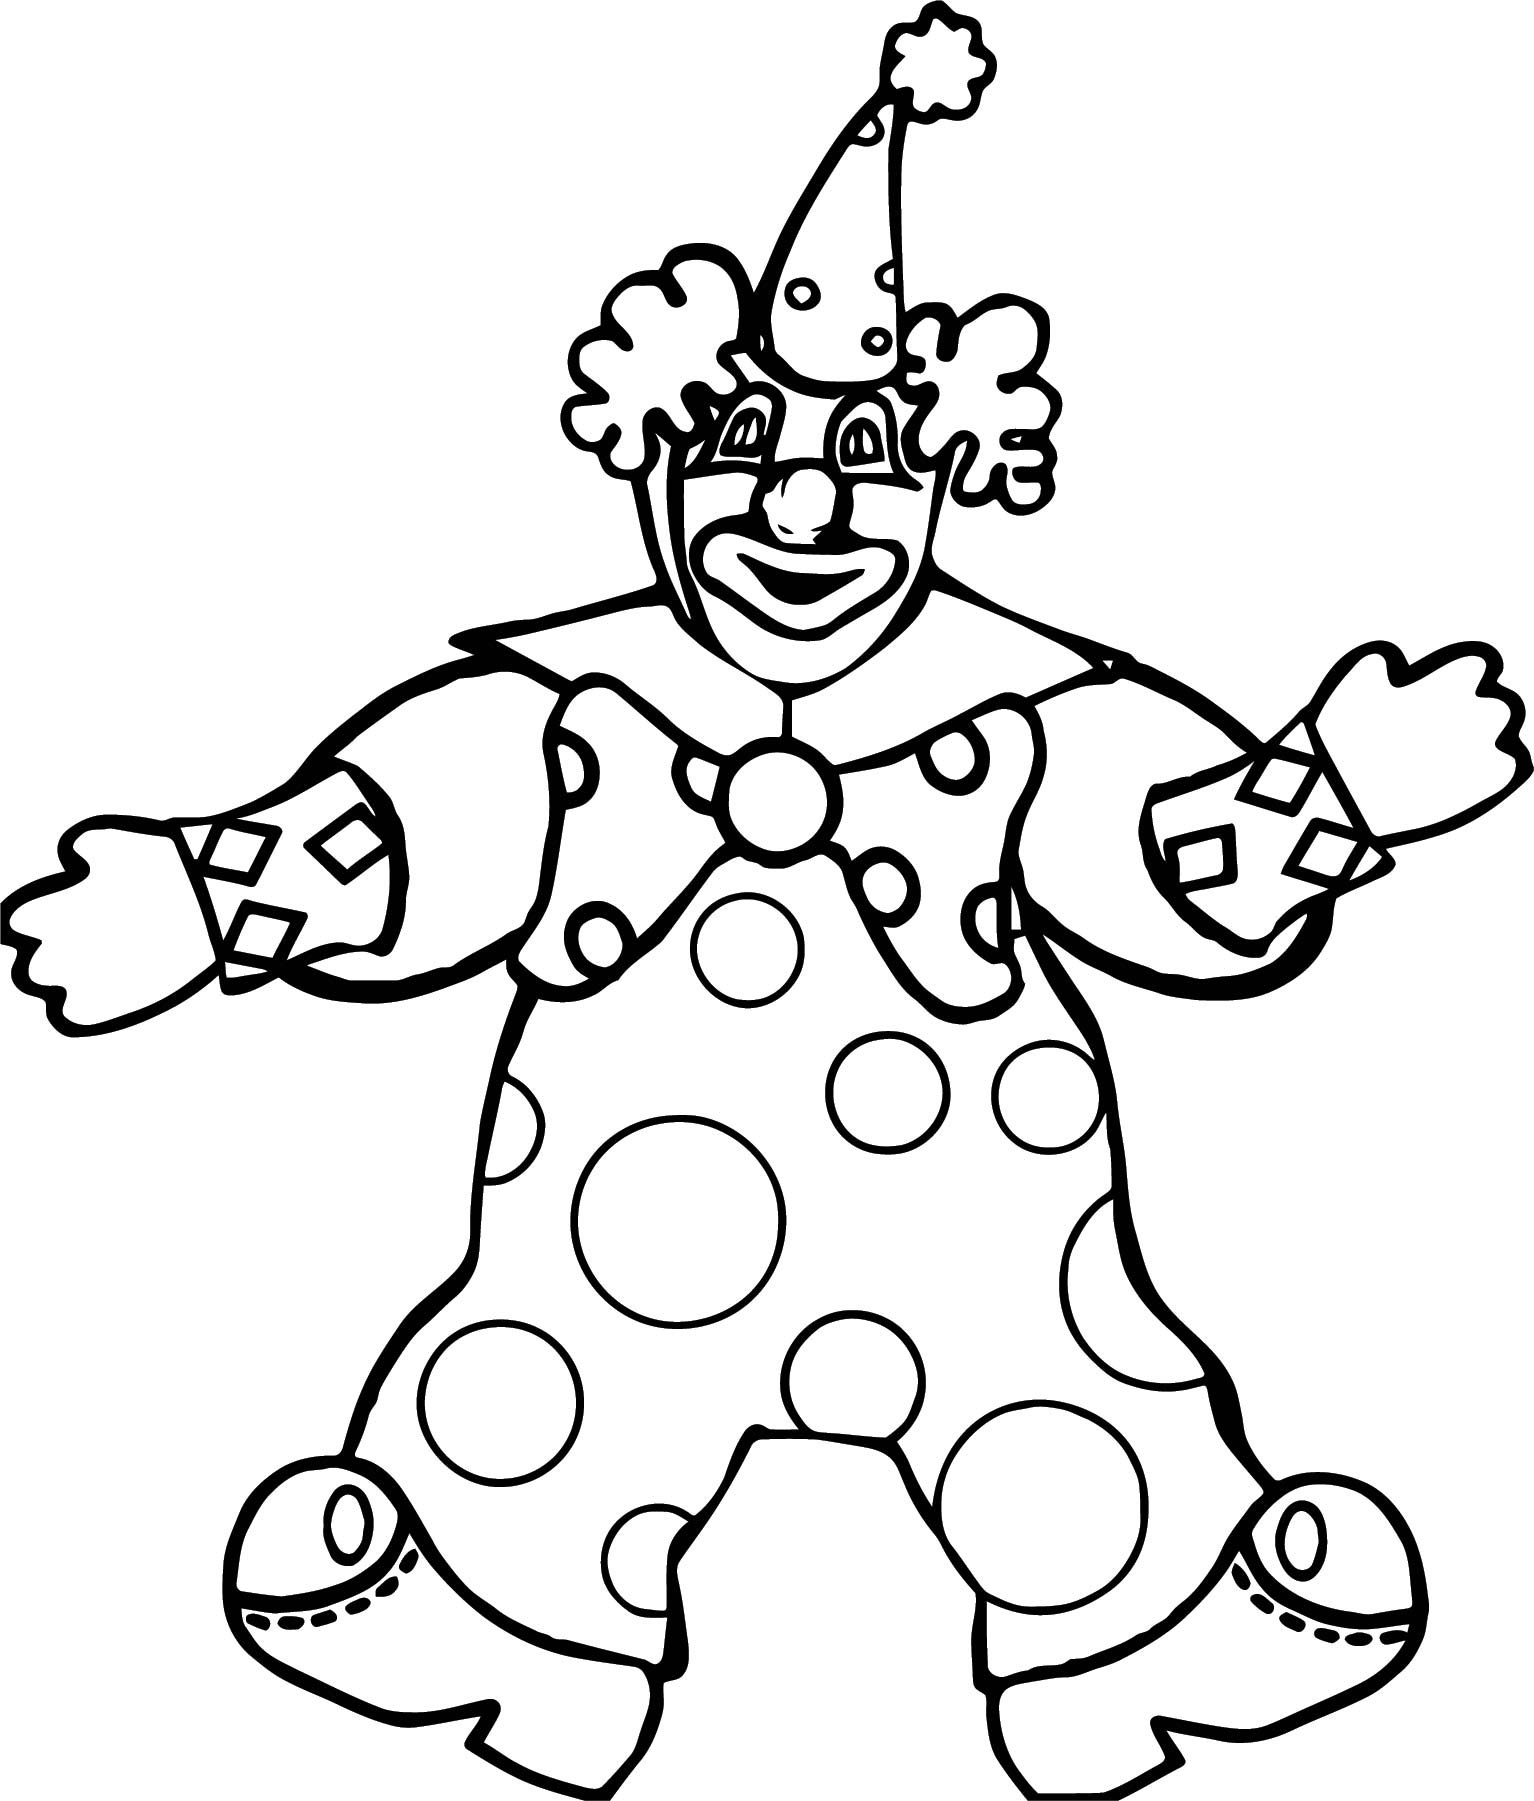 Раскраска клоун для детей 3 4 лет. Клоун раскраска. Клоун раскраска для детей. Раскраска весёлый клоун для детей. Клоун для раскрашивания детям.